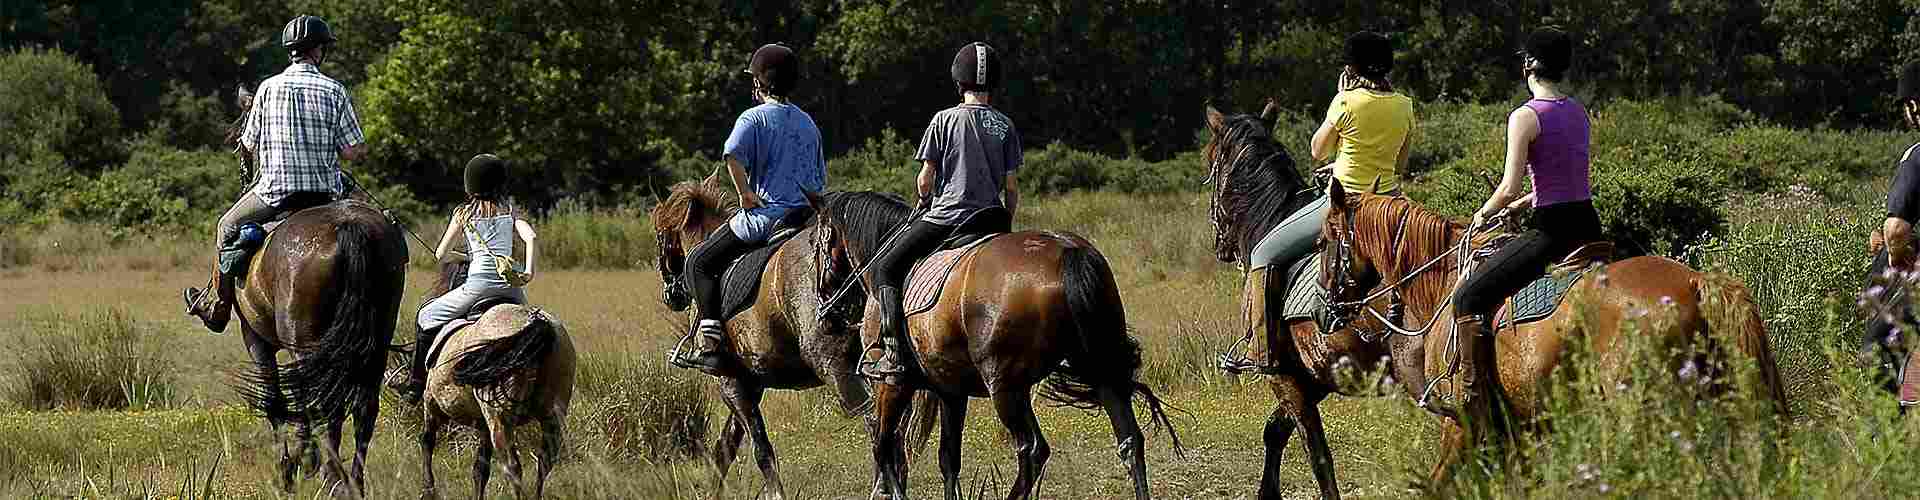 Paseos en caballo en Llinars del Vallès